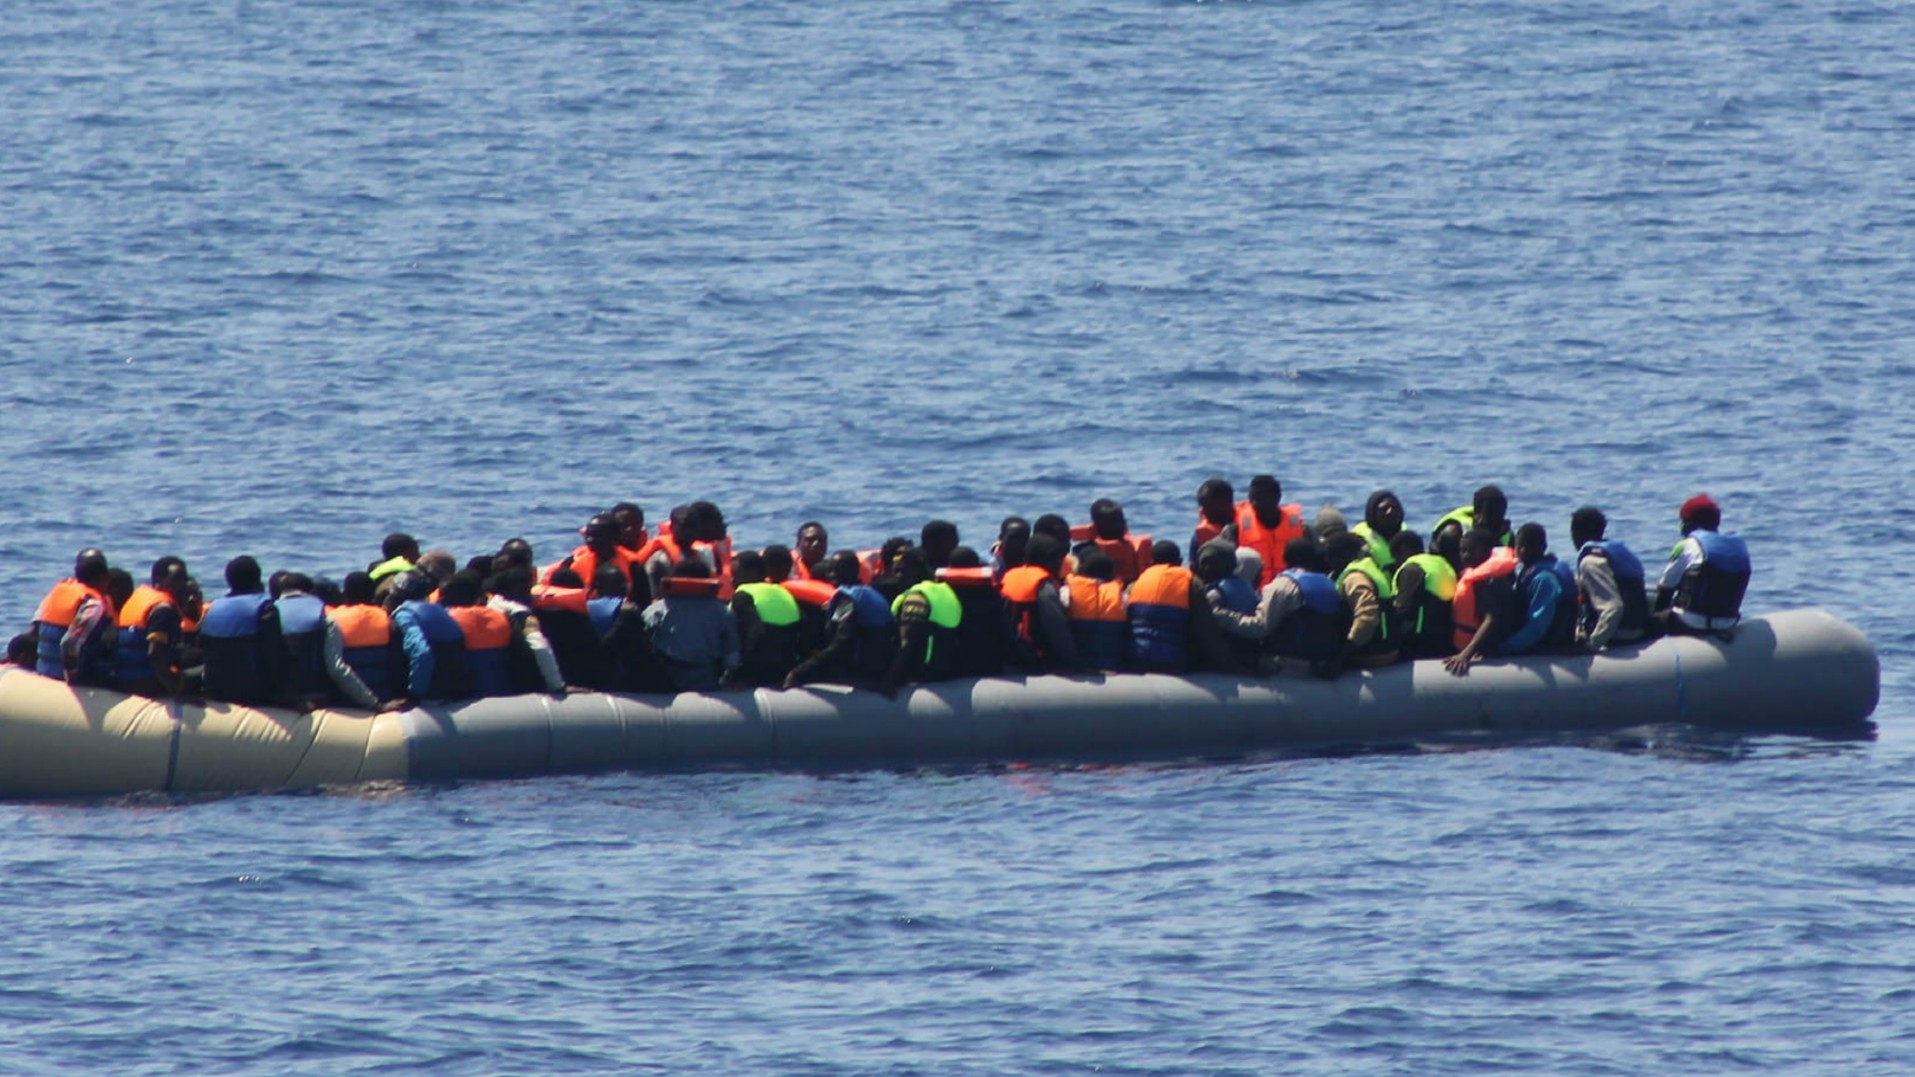 Des migrants traversent souvent la mer au péril de leur vie (Photo: Irish Defense Forces/Flickr/CC BY 2.0)